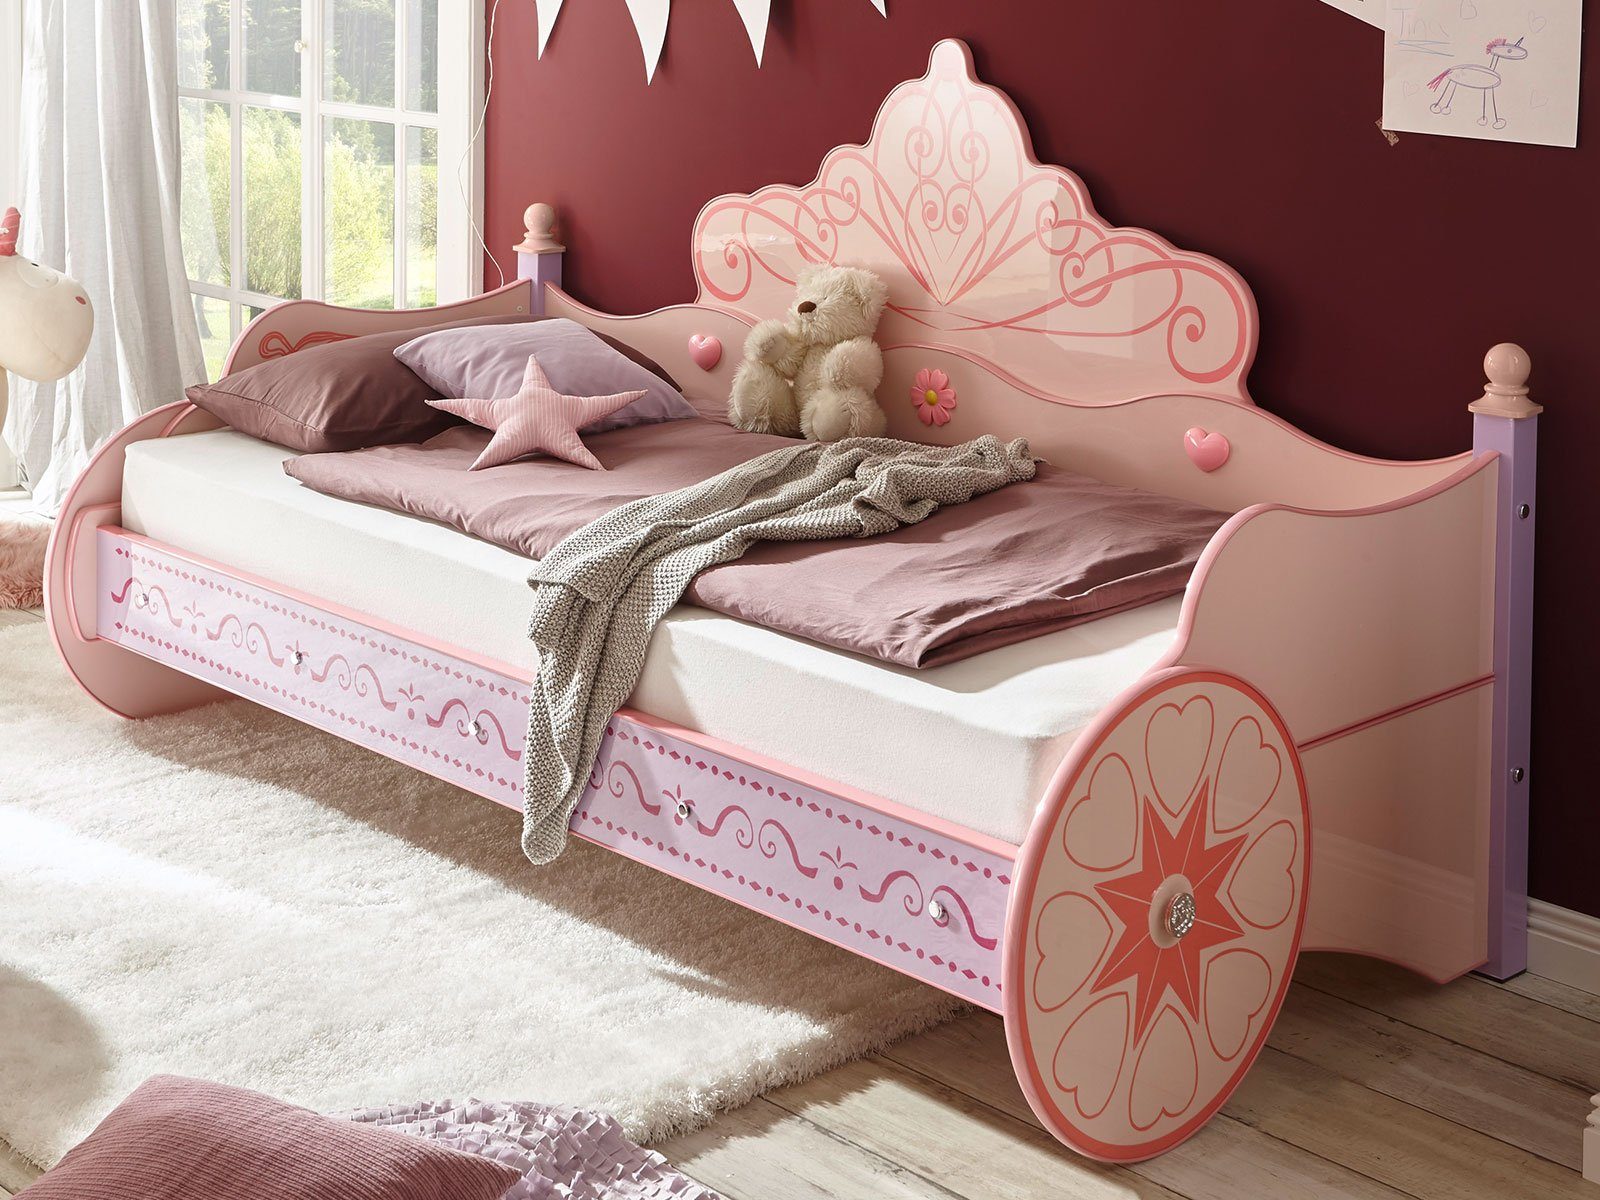 möbelando Kinderbett Papirette, Modernes Kinderbett aus MDF Glanz lackiert in verschiedenen Pink- und Rosatönen. Liegefläche 90x200 cm. Breite 104,5 cm, Höhe 120 cm, Tiefe 211,5 cm